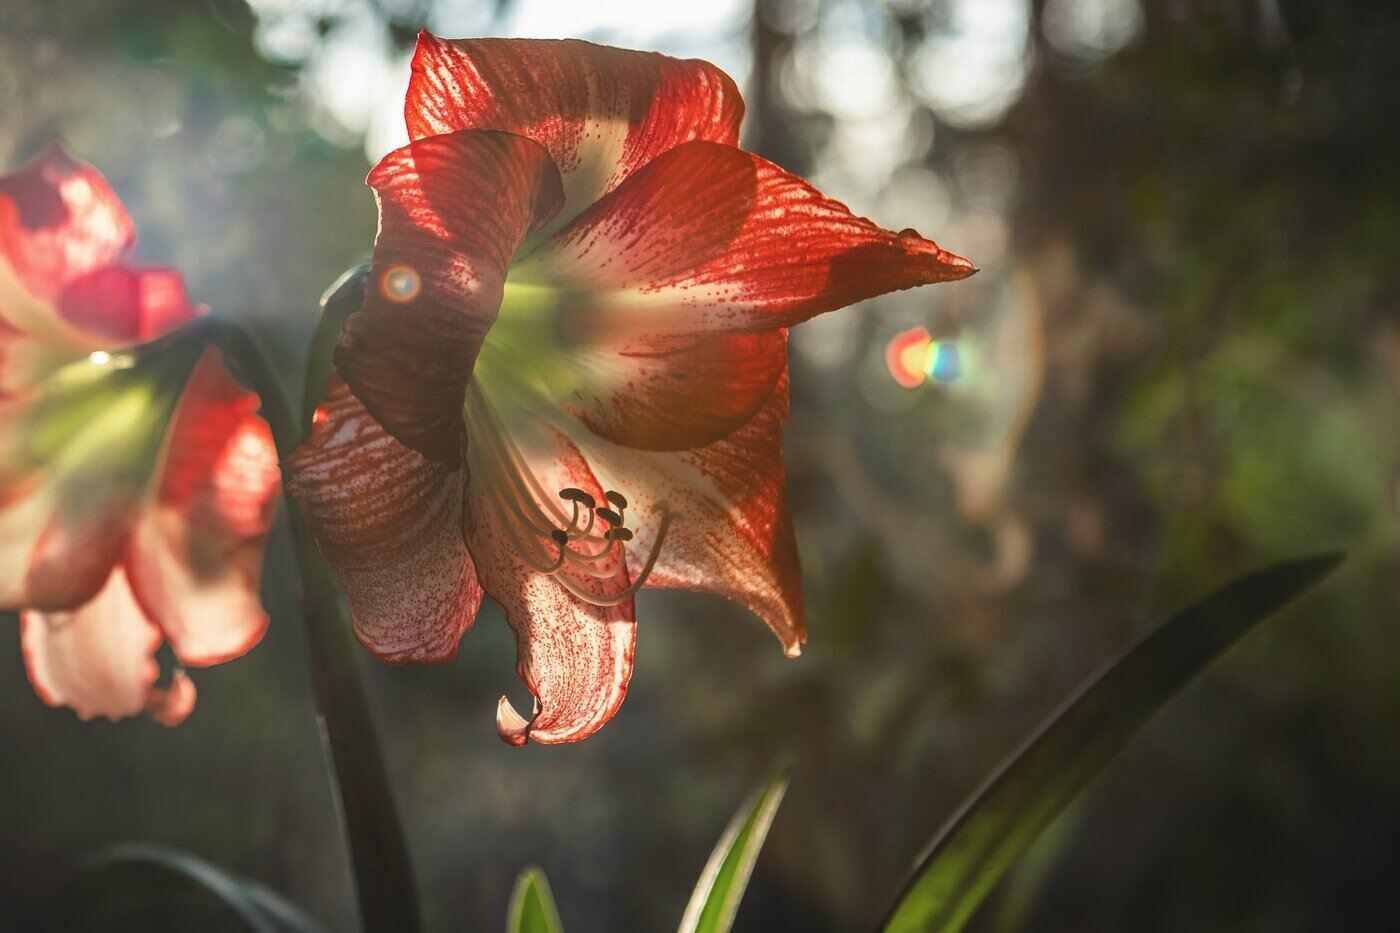 rot-weiß gestreifte Amaryllis - alles über Amaryllisblüten und ihre verschiedenen Farben